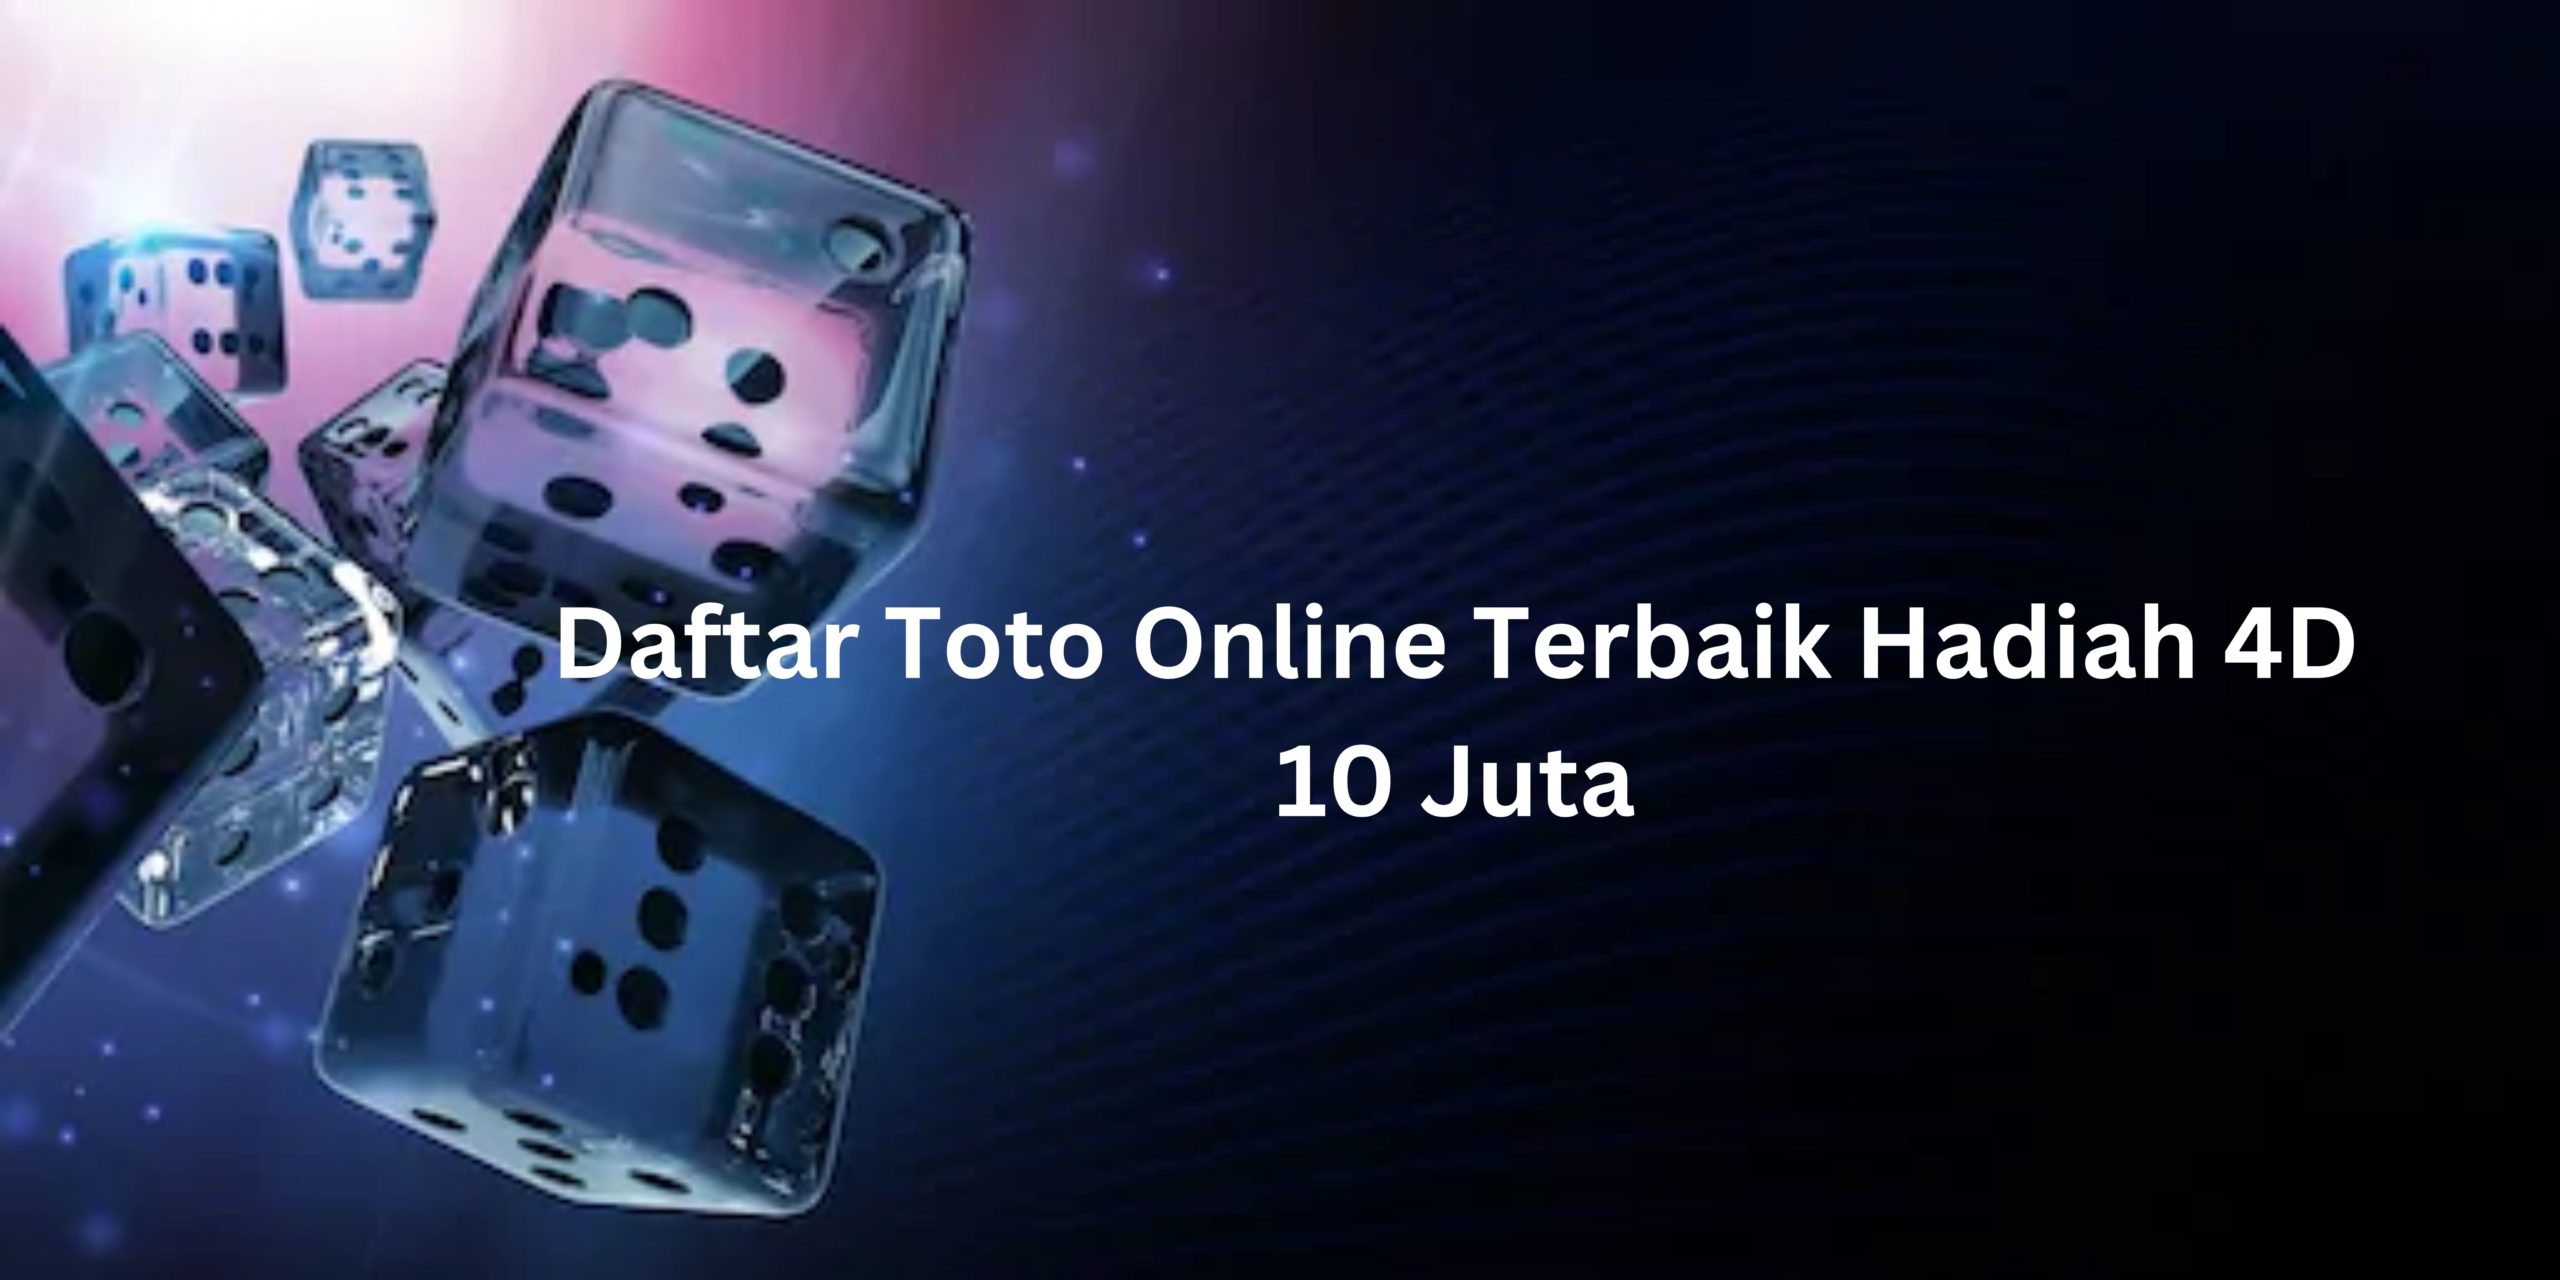 Daftar Toto Online Terbaik Hadiah 4D 10 Juta